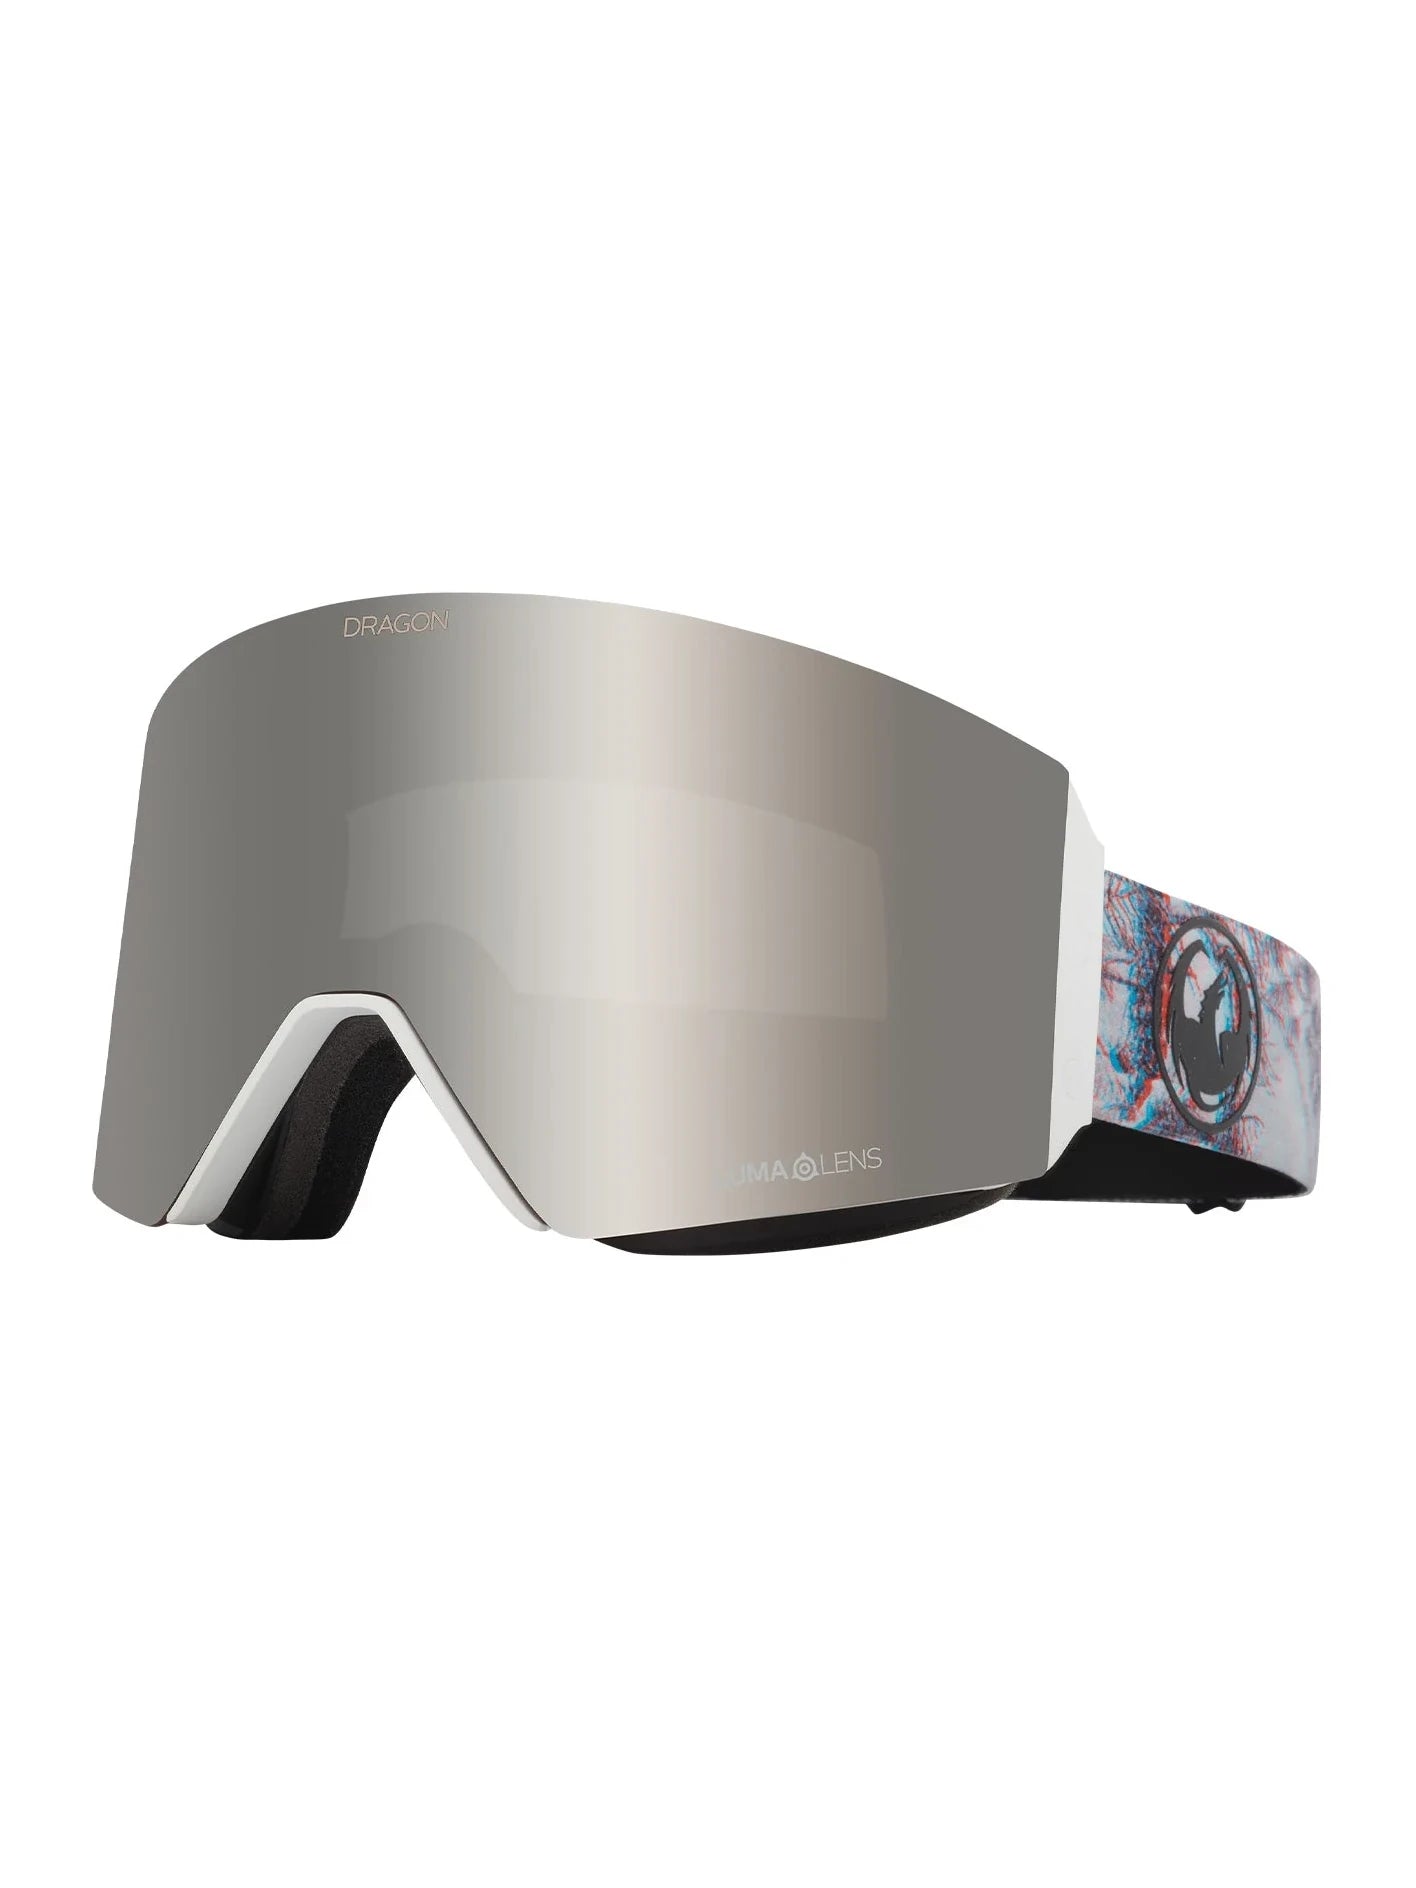 Dragon RVX MAG OTG – Aberration mit Lumalens Silver Ionized und Lumalens Yellow Lens | Drachen | Meistverkaufte Produkte | Neue Produkte | Neueste Produkte | Sammlung_Zalando | Snowboard-Shop | Snowboardbrillen | surfdevils.com